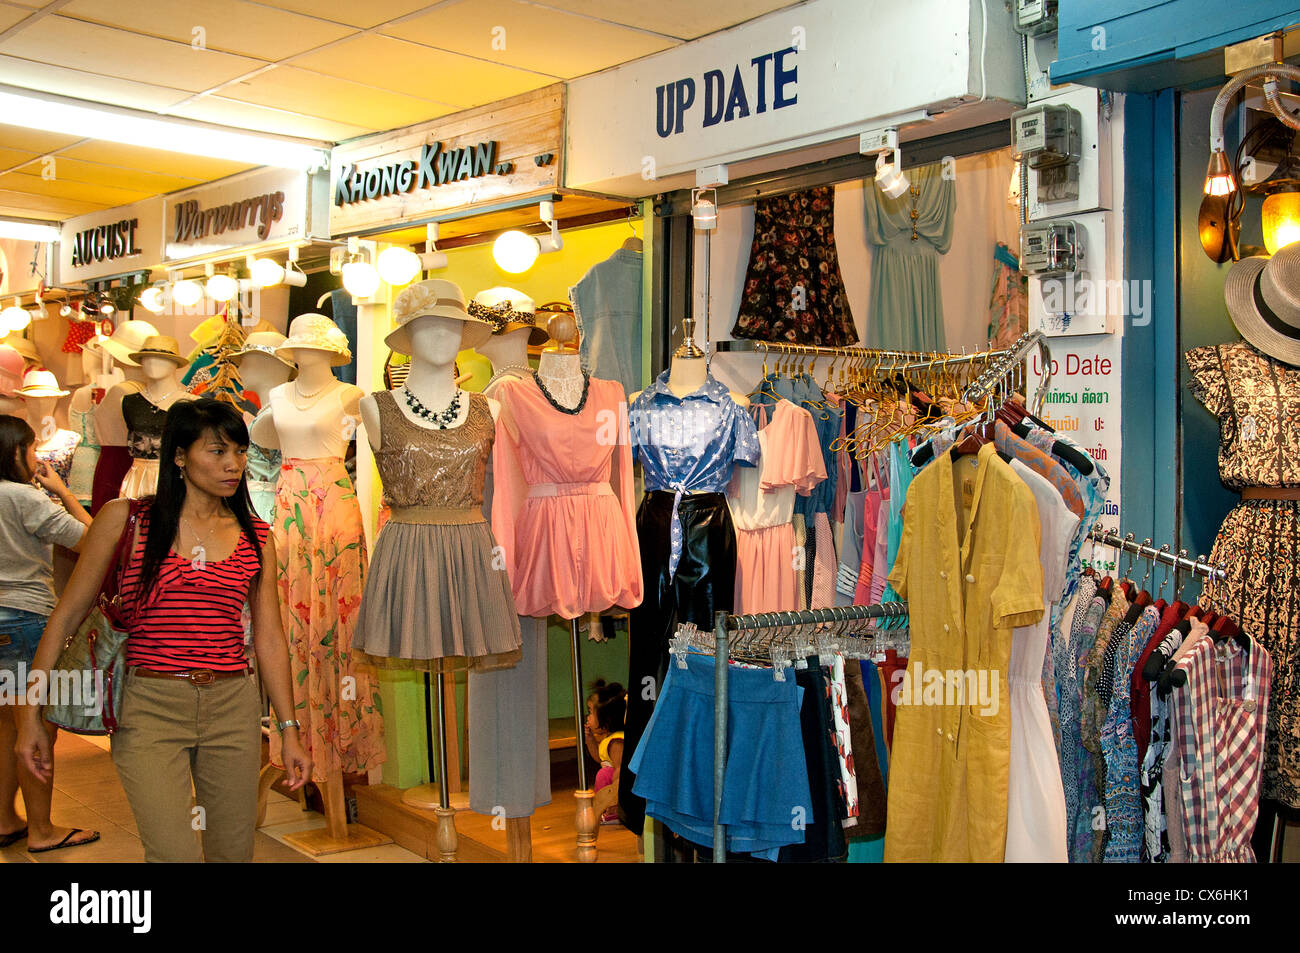 Tienda de ropa tailandesa fotografías e imágenes alta resolución Alamy